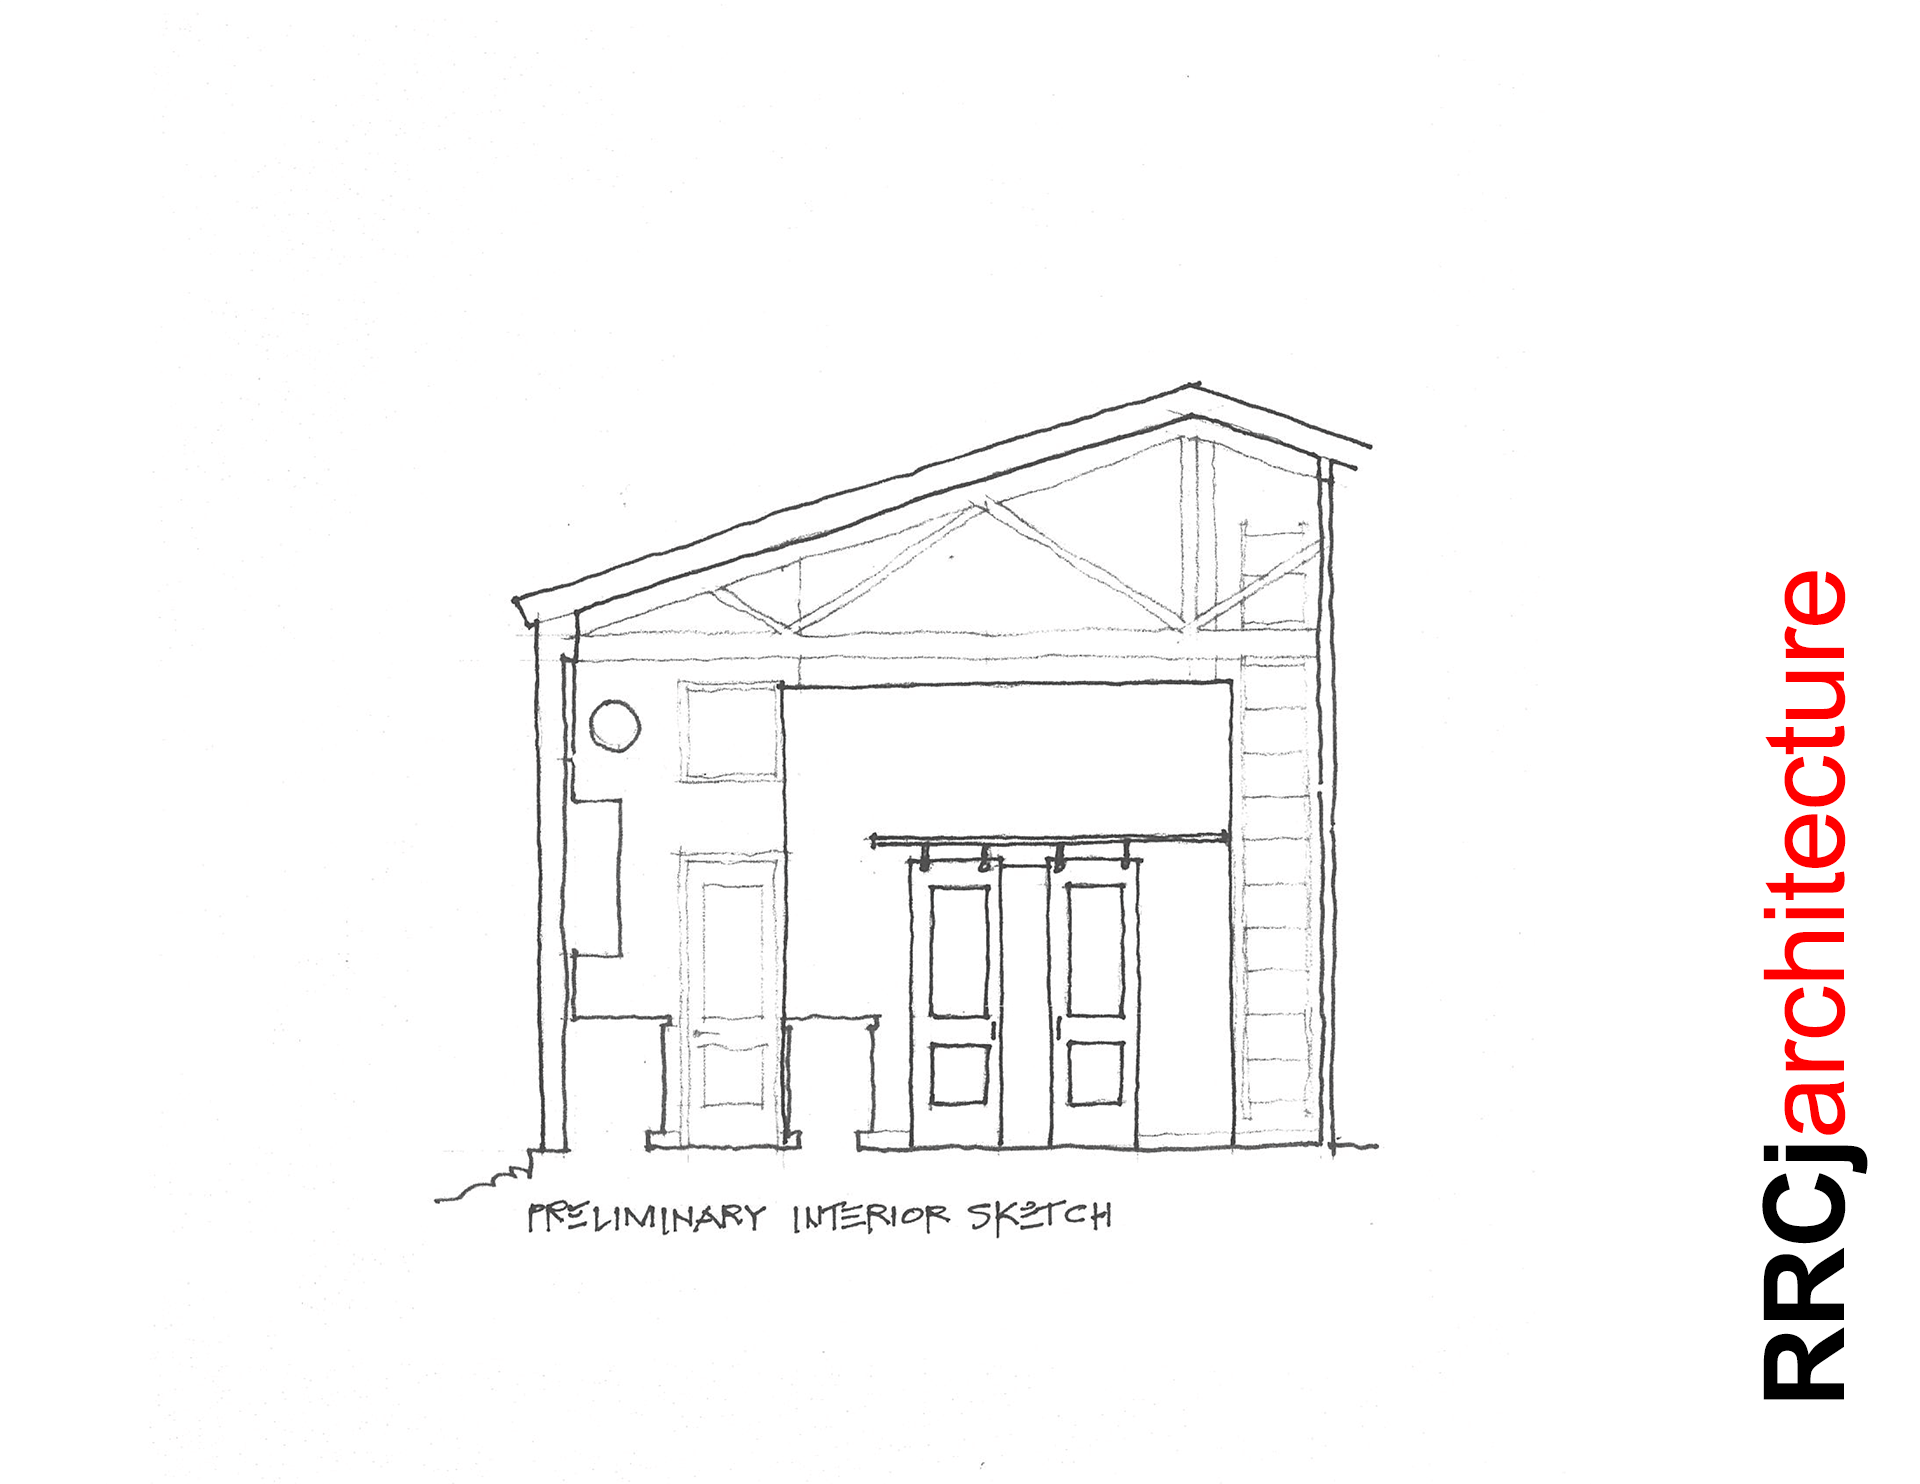 Barndominium Preliminary Interior Sketch